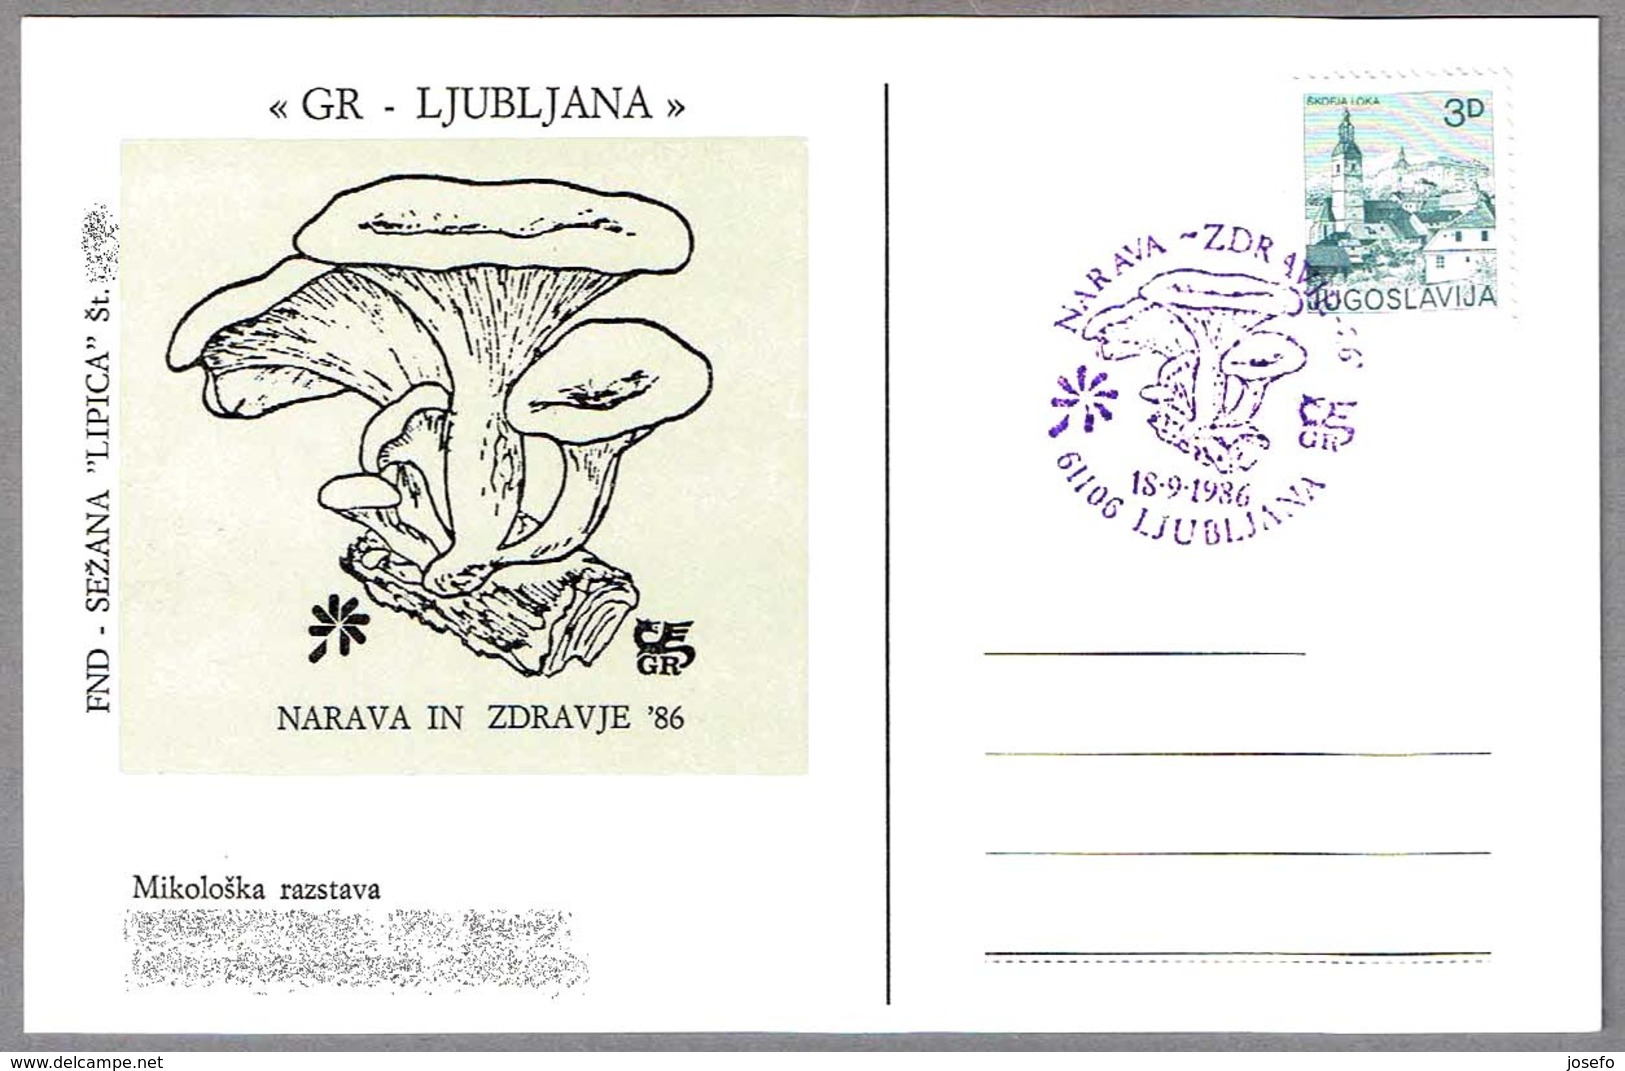 Narava In Zdravje'96 - SETA - MUSHROOM - CHAMPIGNON. Ljubljana, Yugoslavia, 1986 - Mushrooms